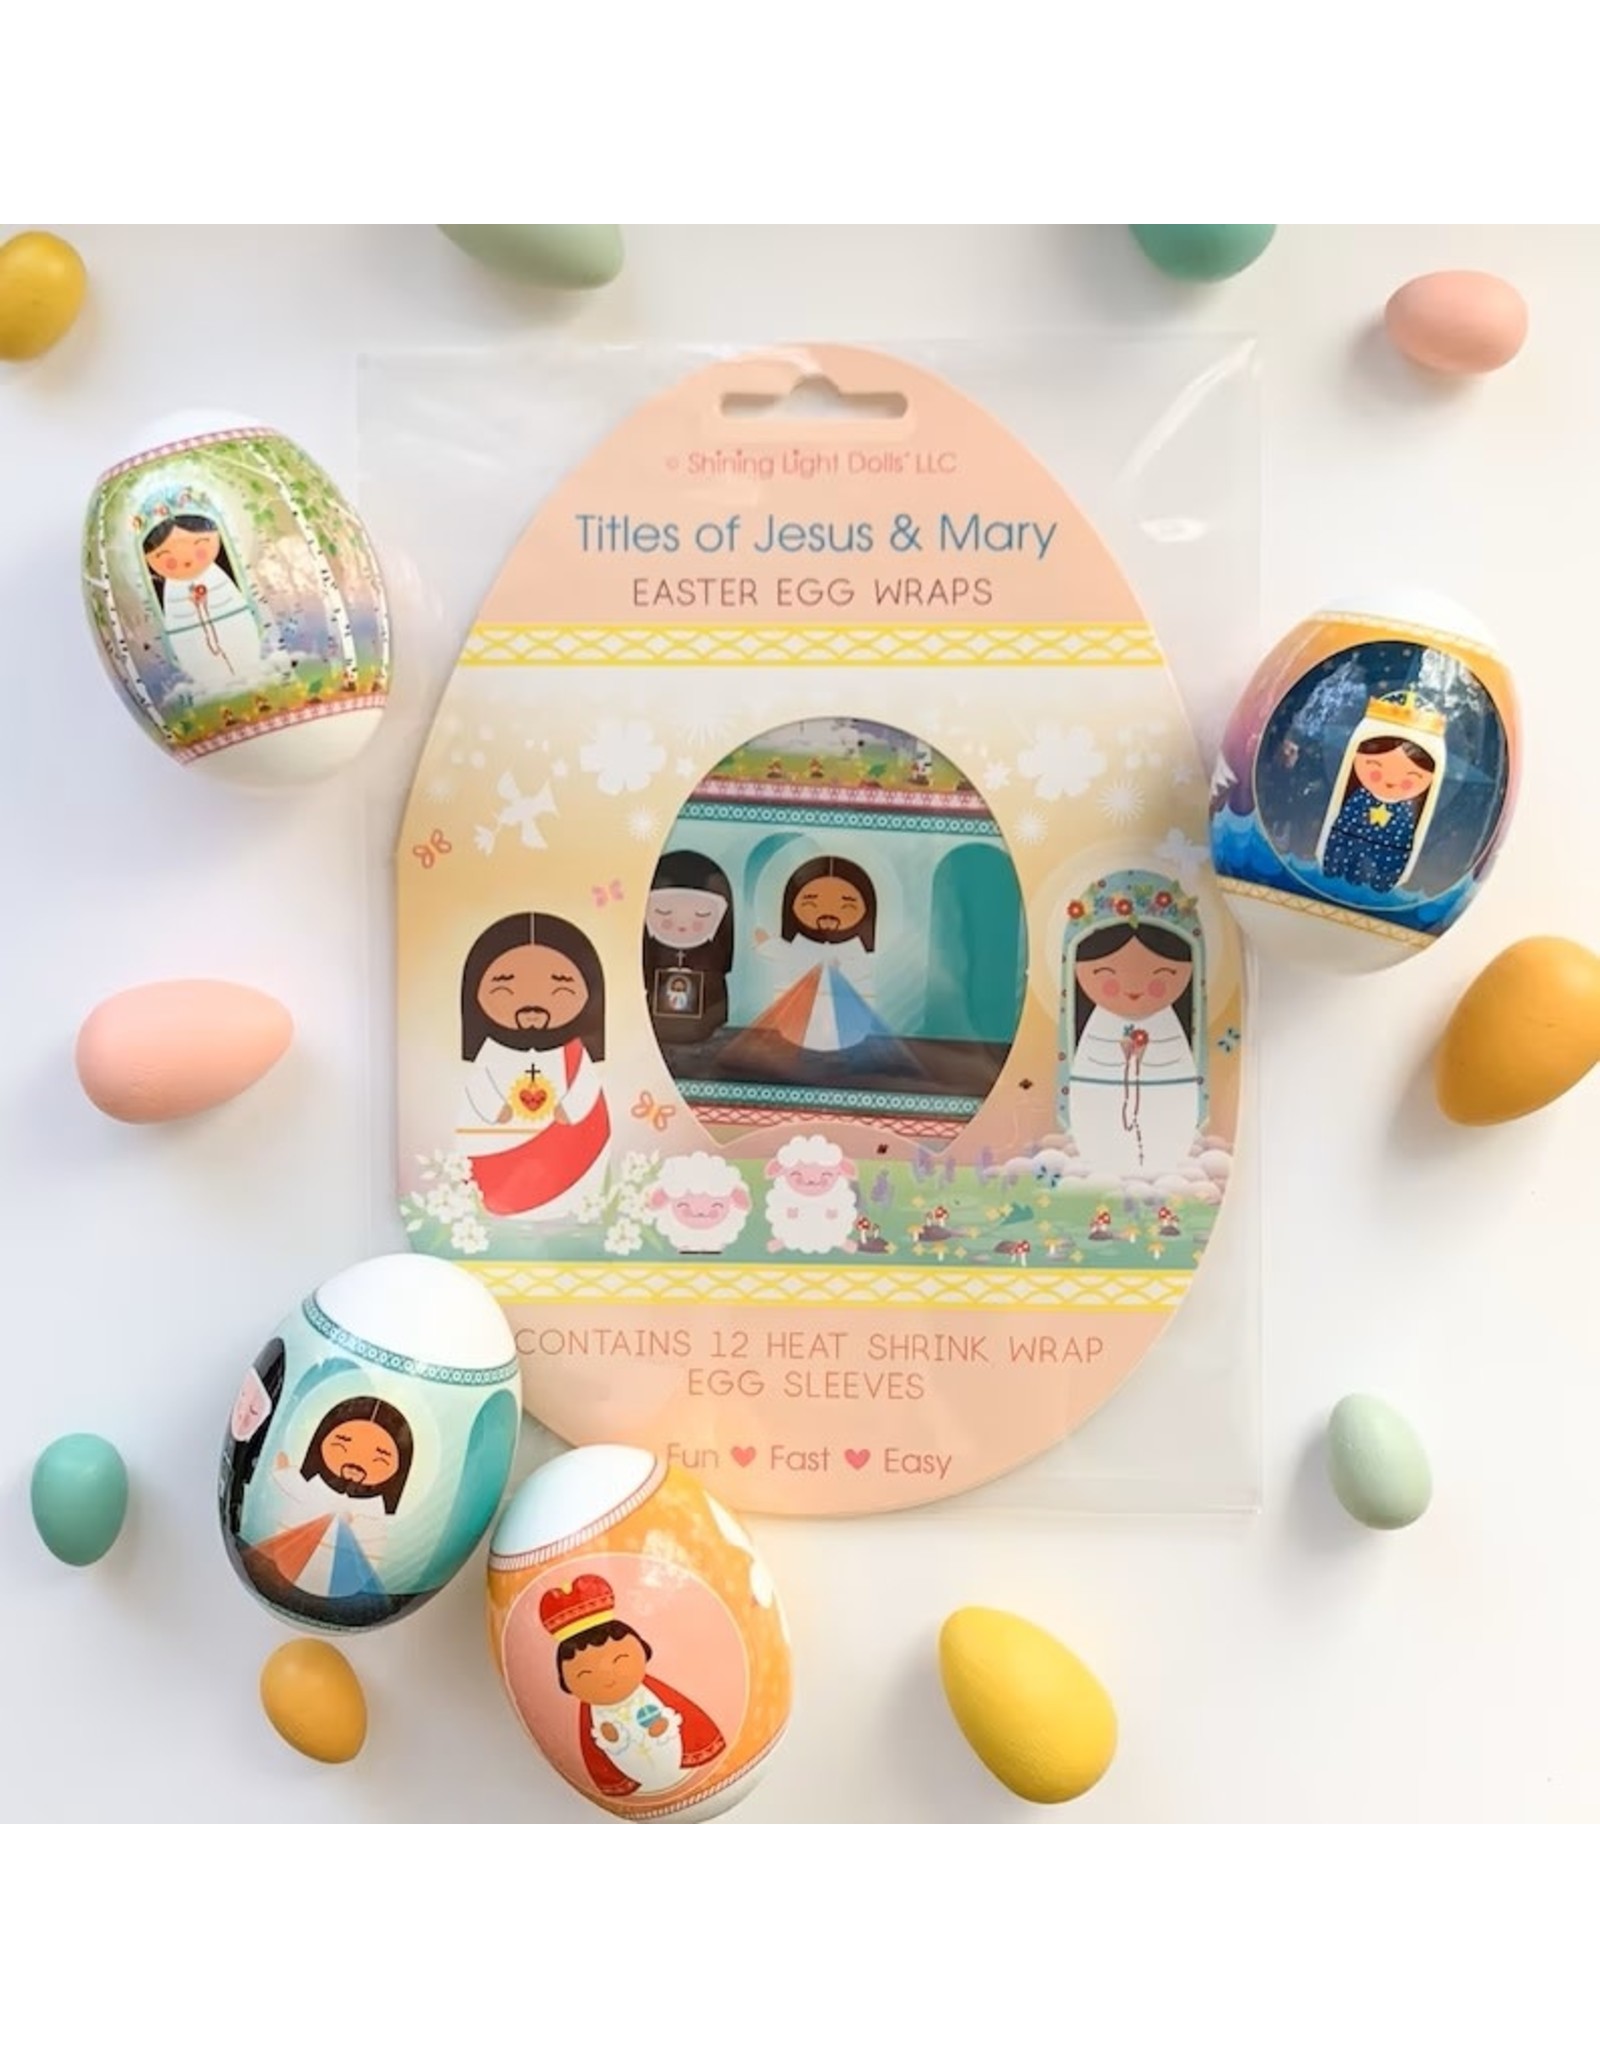 Shining Light Dolls Shining Light Dolls - Easter Egg Wraps - Titles of Jesus & Mary (12 per pack)